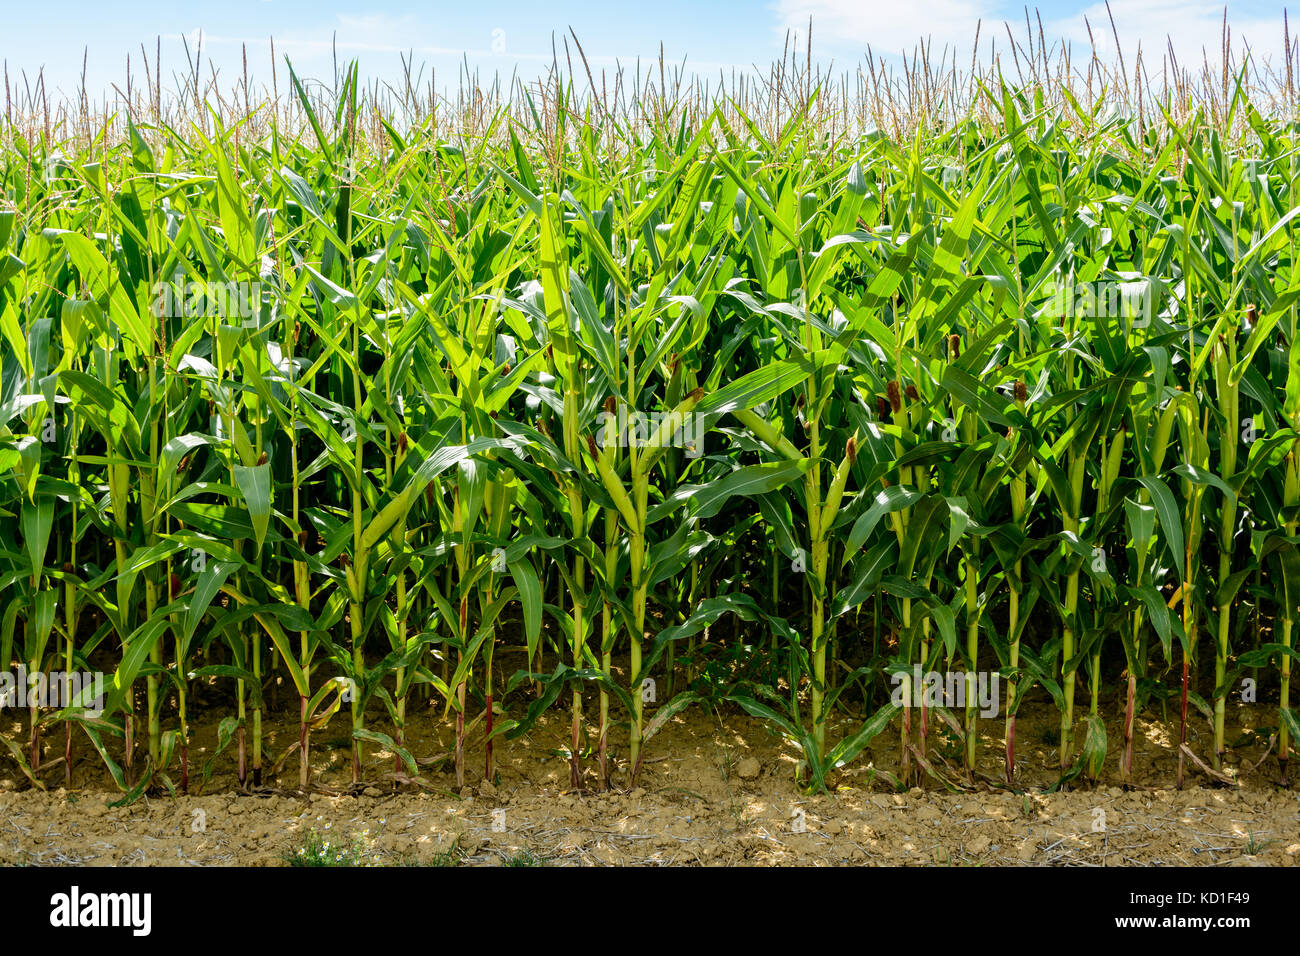 Vista frontal de un campo de maíz que las plantas han alcanzado su máxima altura y se encuentran entre R2 y R3 de las etapas de desarrollo. Foto de stock